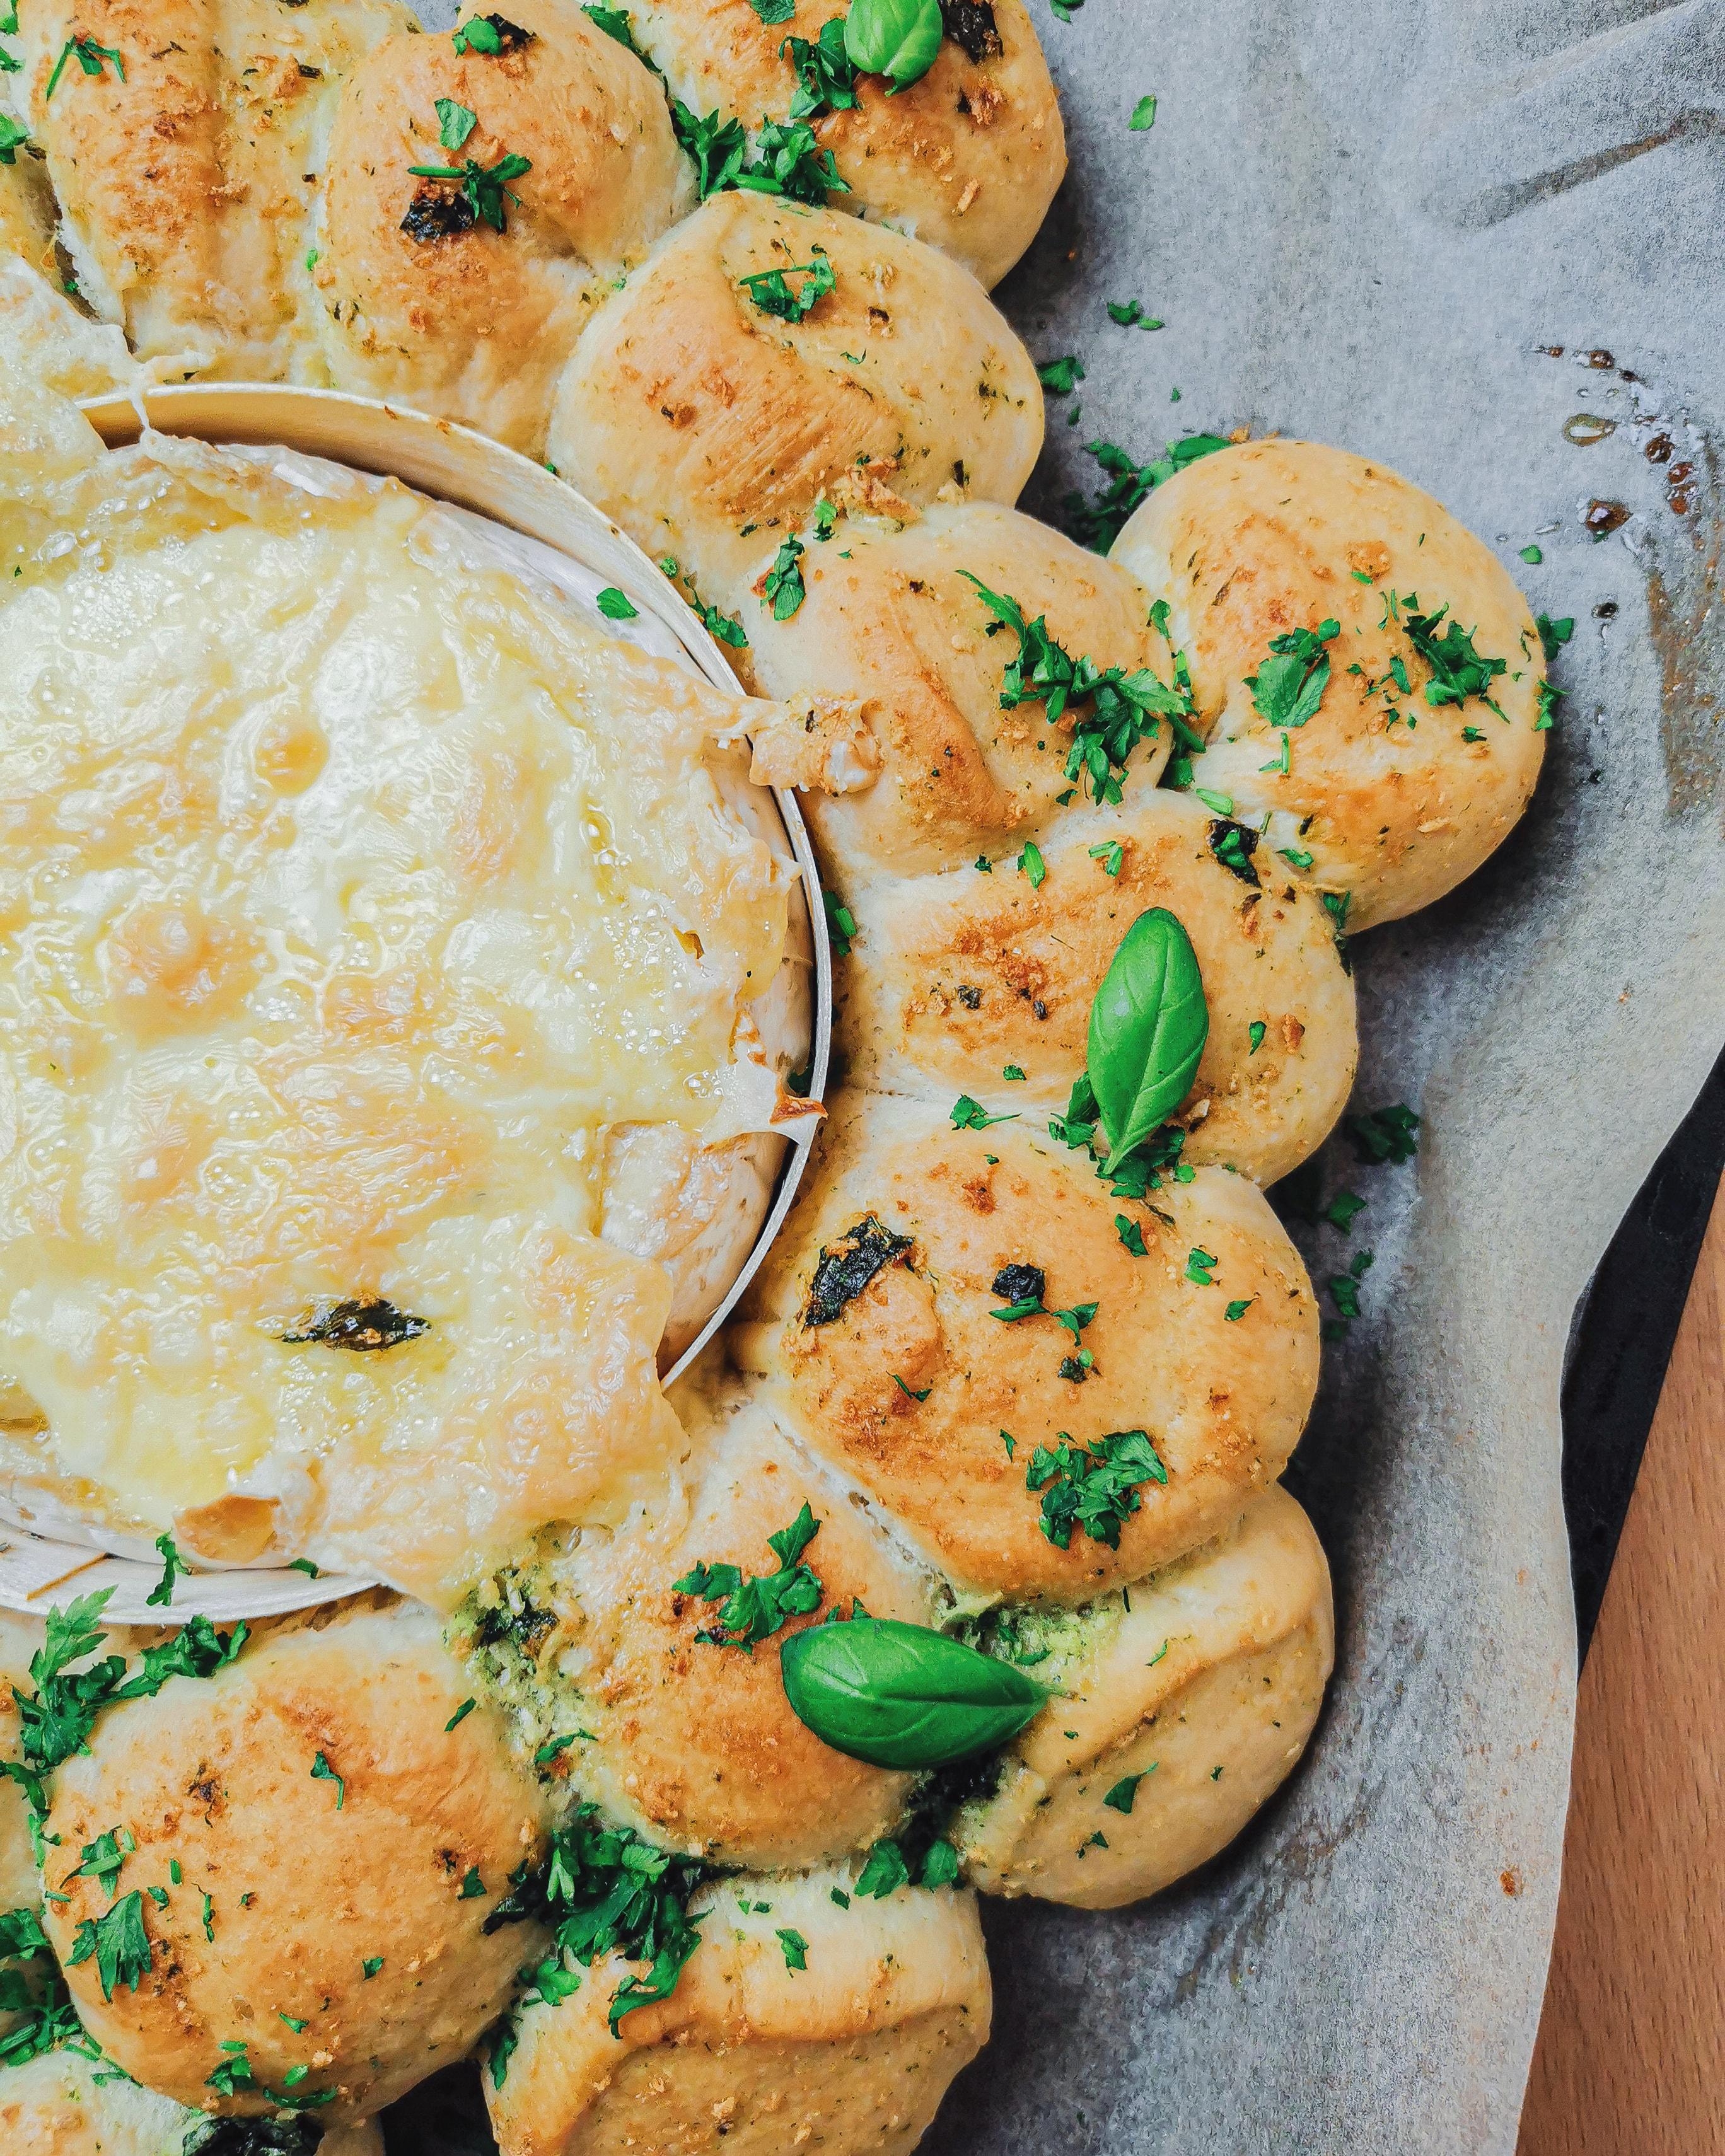 Ofenkäse mit Knobizupfbrot😍 für die #cheeseaddict #foodchallenge ❤️